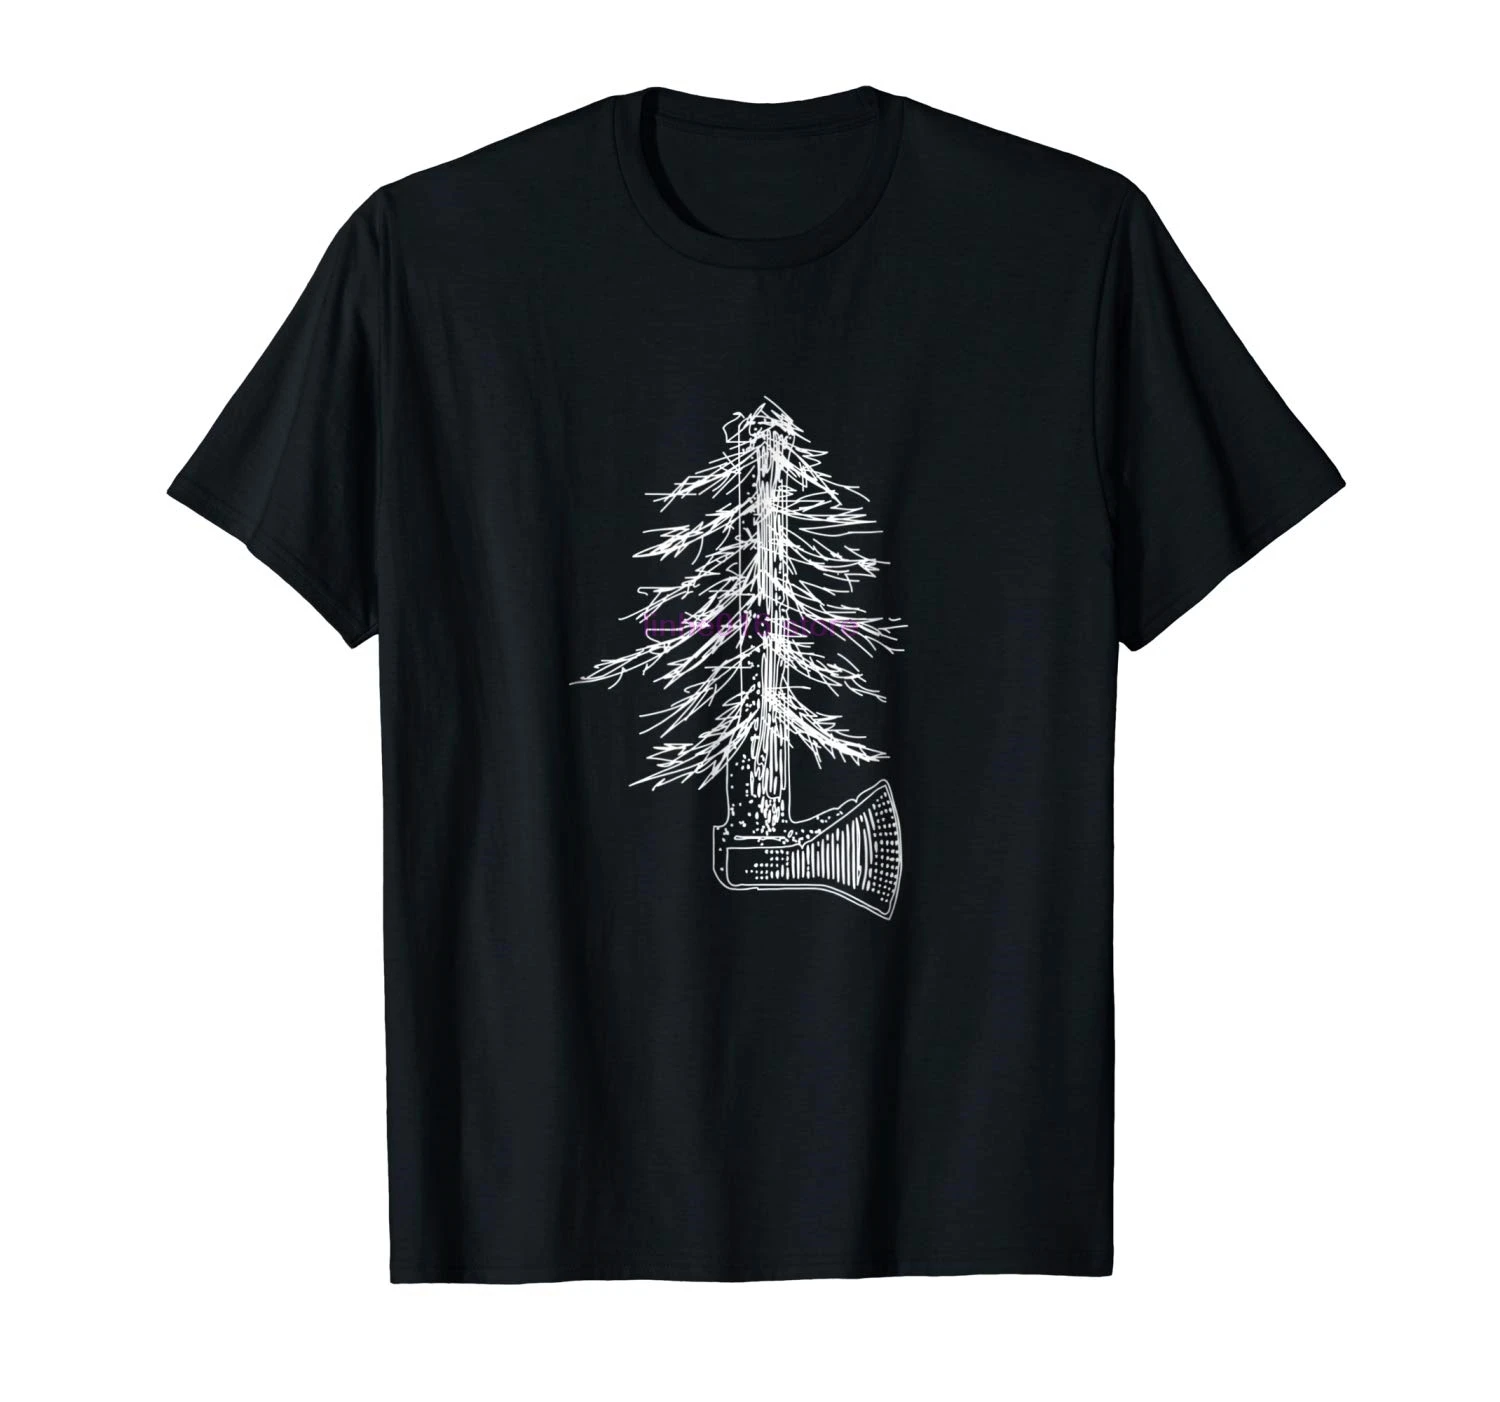 GILDAN brand men shirt Axe Throwing Pine Tree Shirt-in T-Shirts from ...